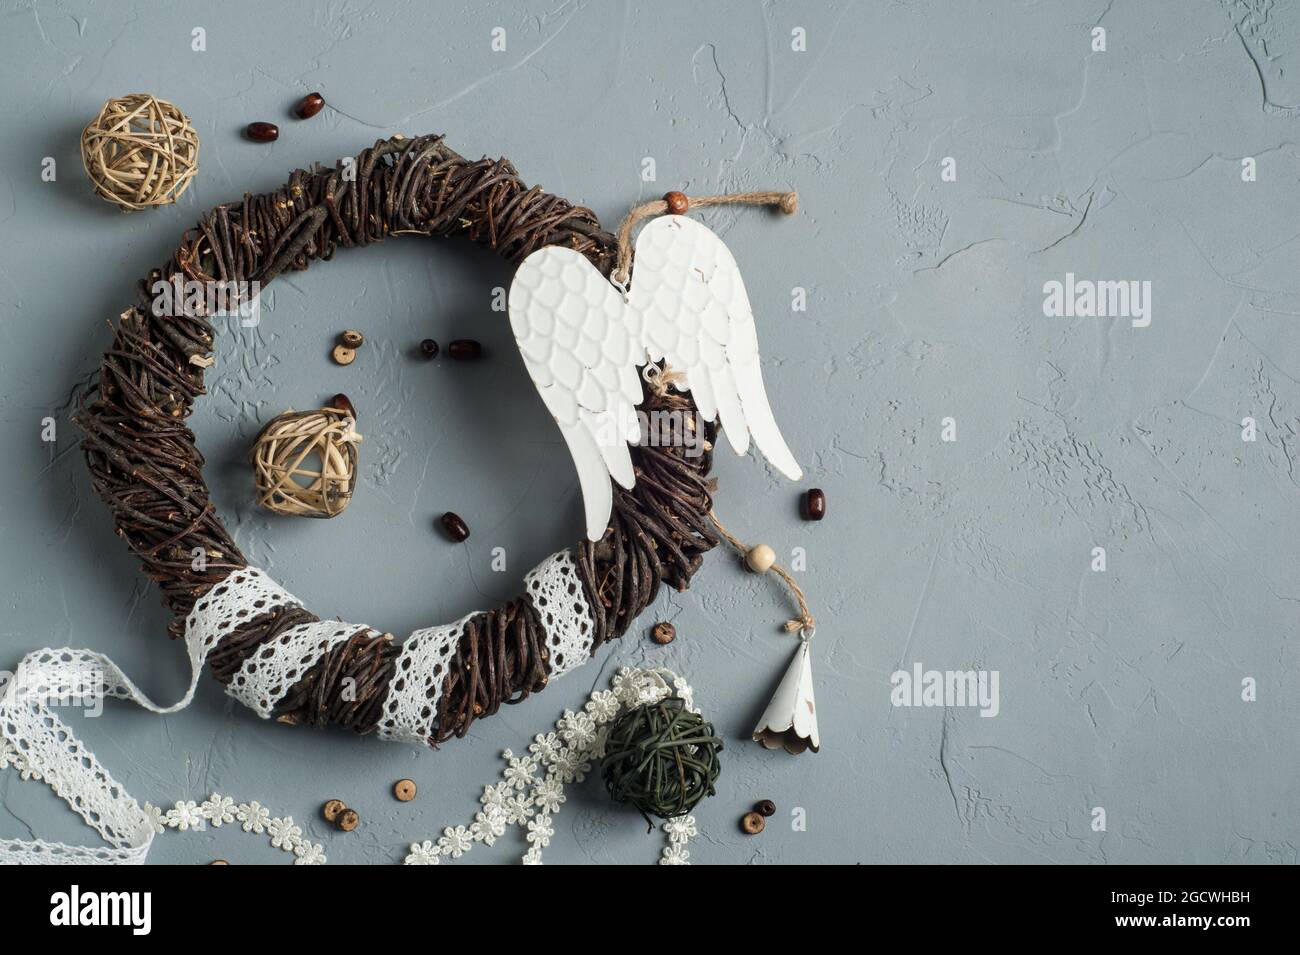 Decorazione di Natale con anello di vimini, lacci, angelo ali giocattolo su fondo di cemento. Matrimonio, xmas struttura ruvida posa piatta Foto Stock